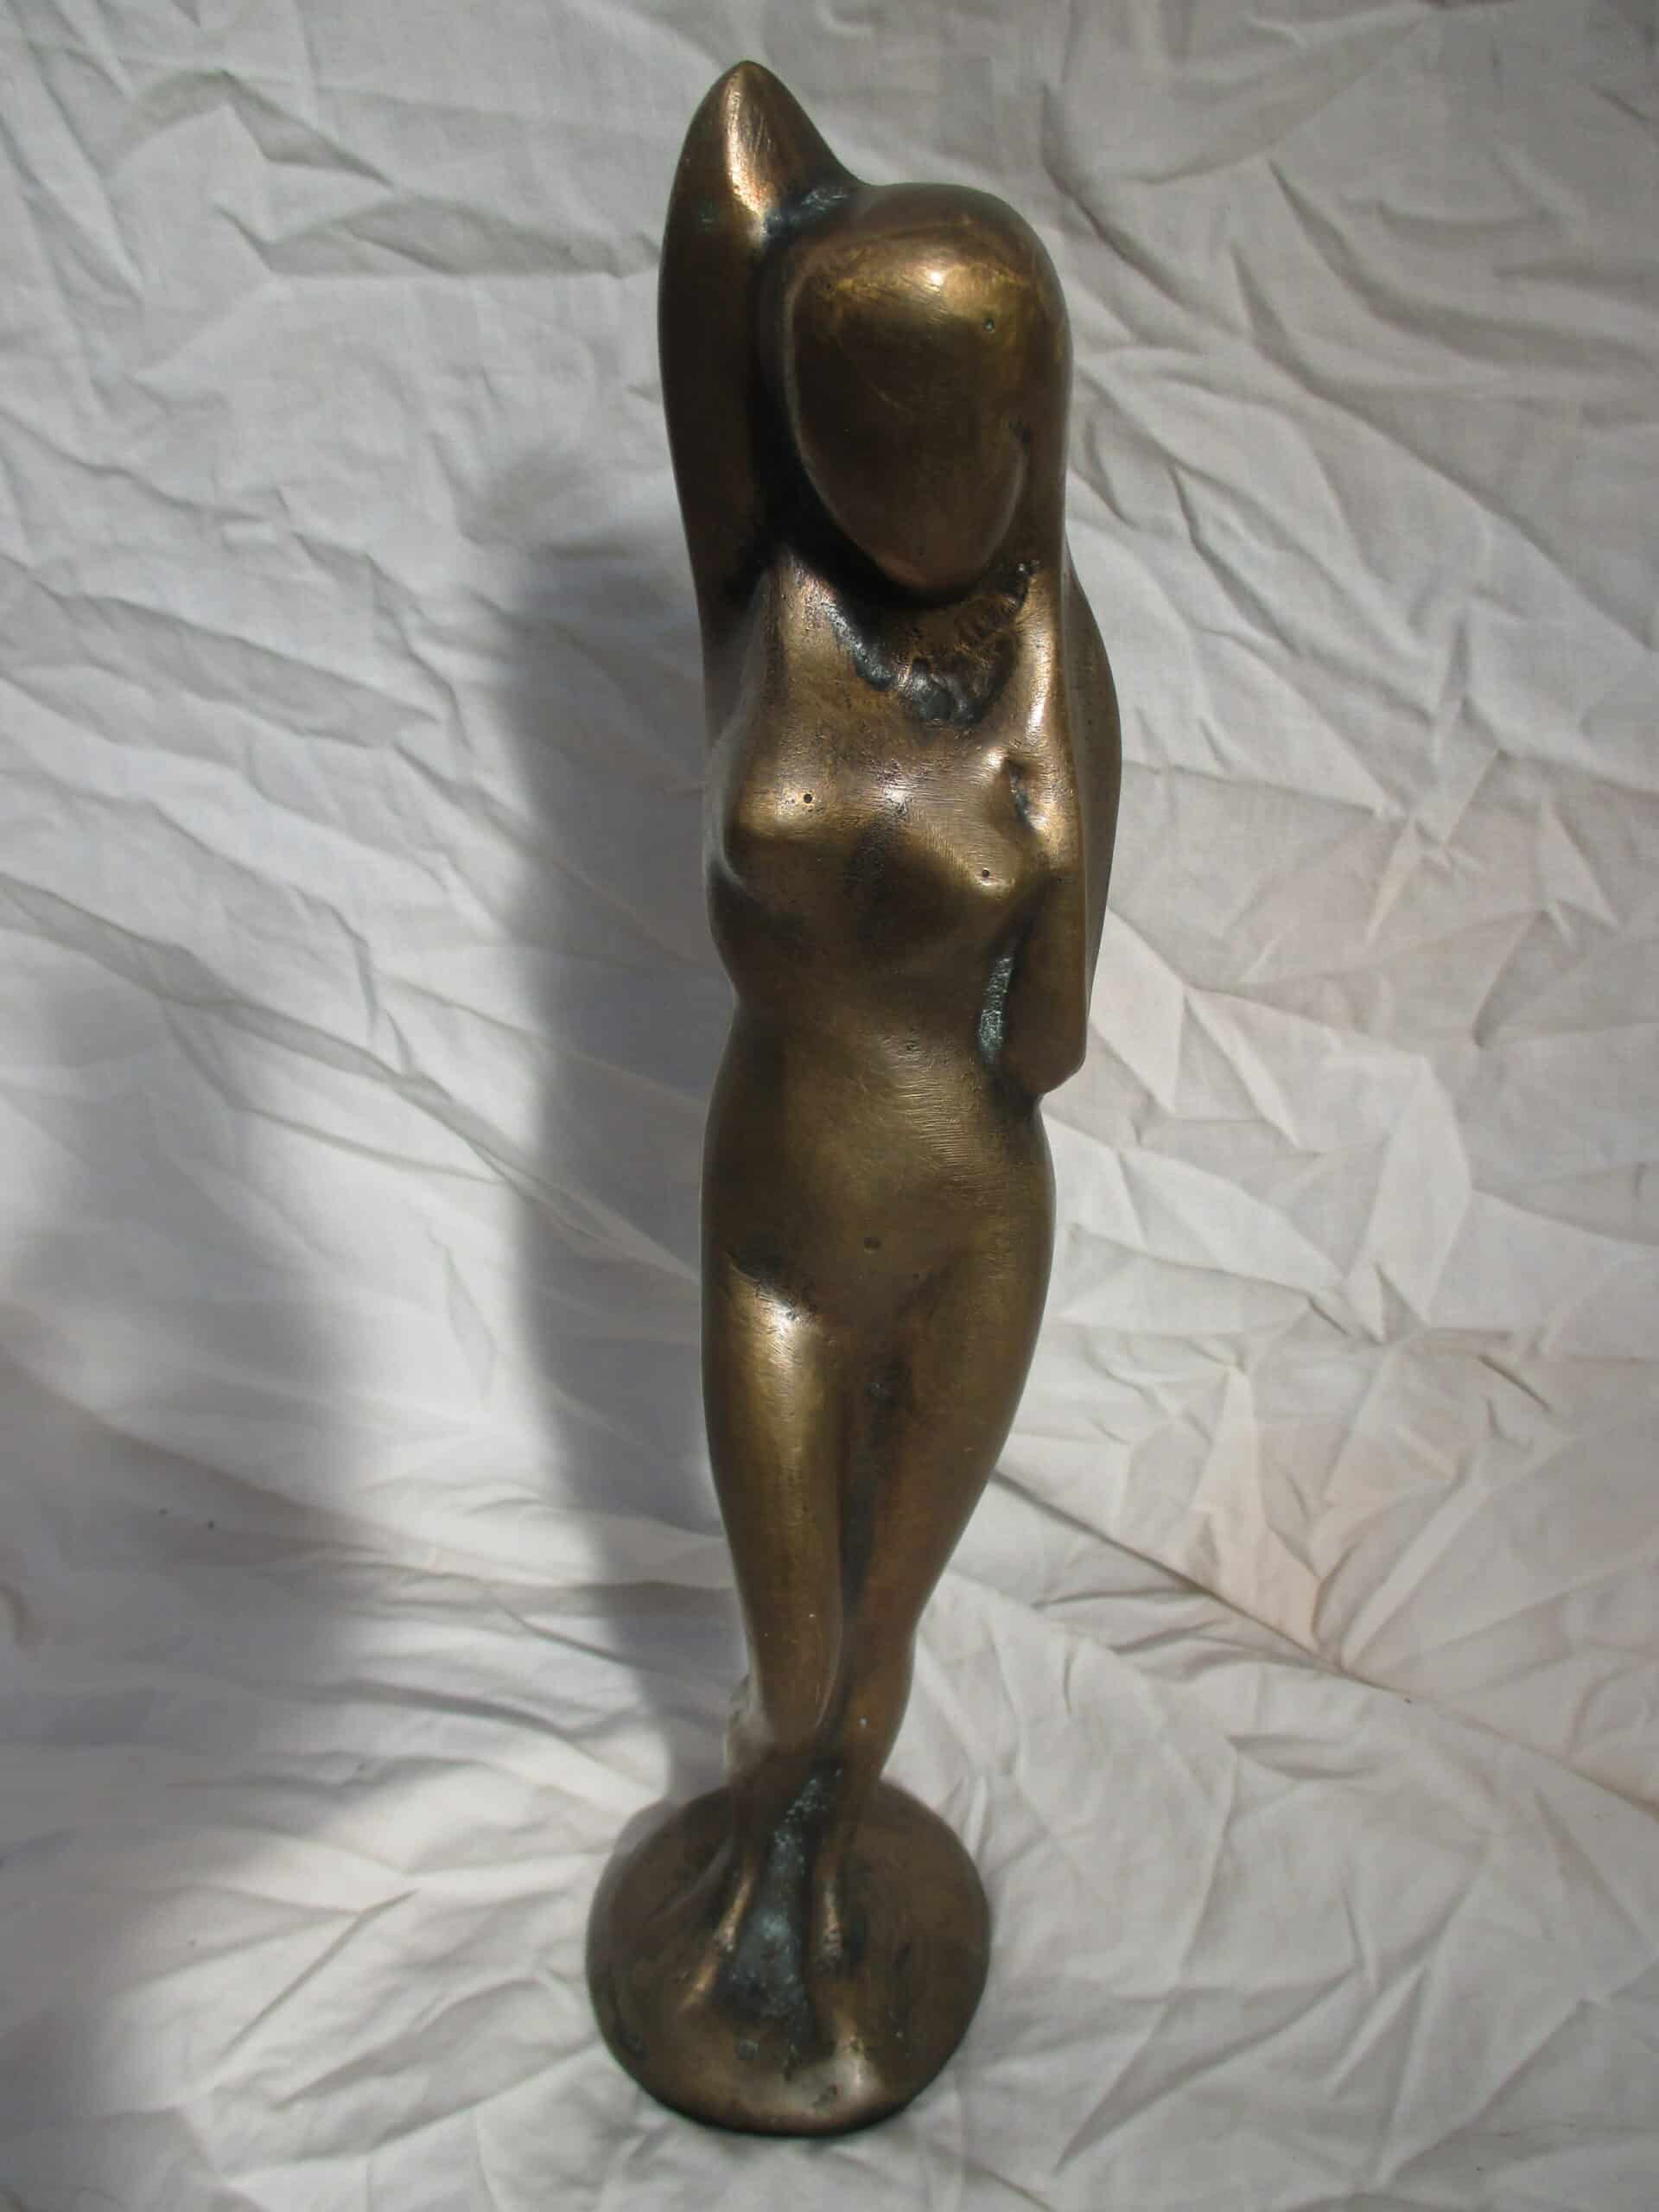 Estimation de sculpture et bronze I Estimation gratuite en 48h: bronze gaveau.